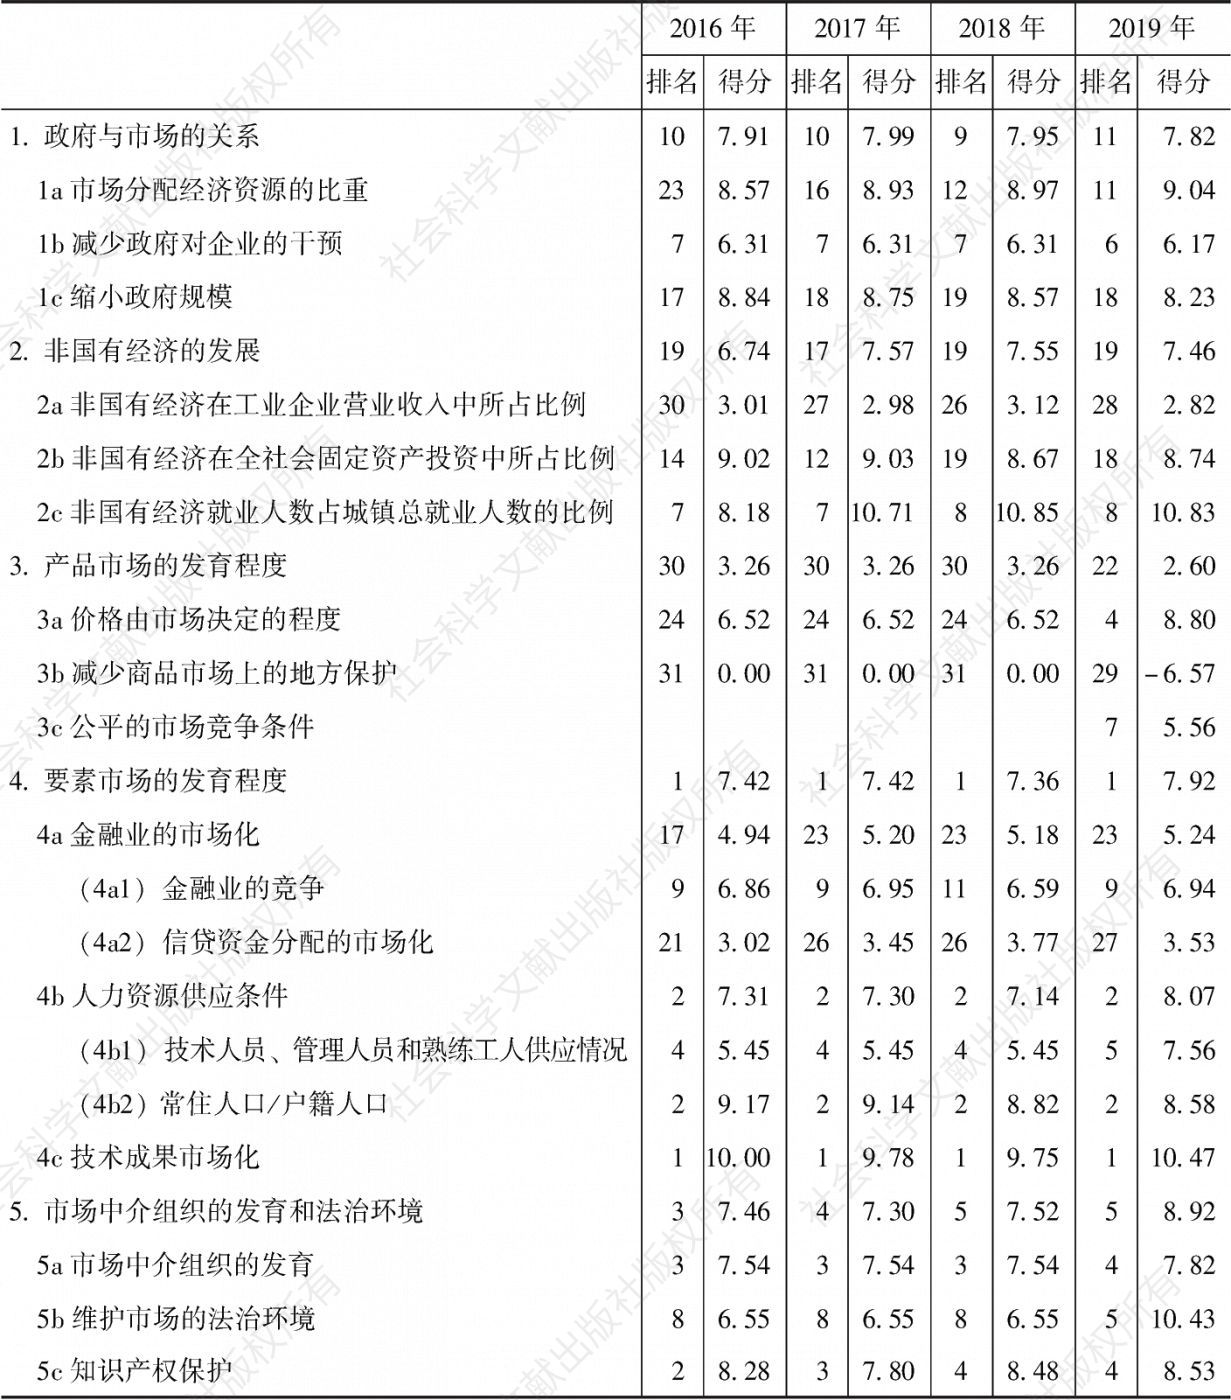 北京市场化各方面指数和分项指数的排名及得分